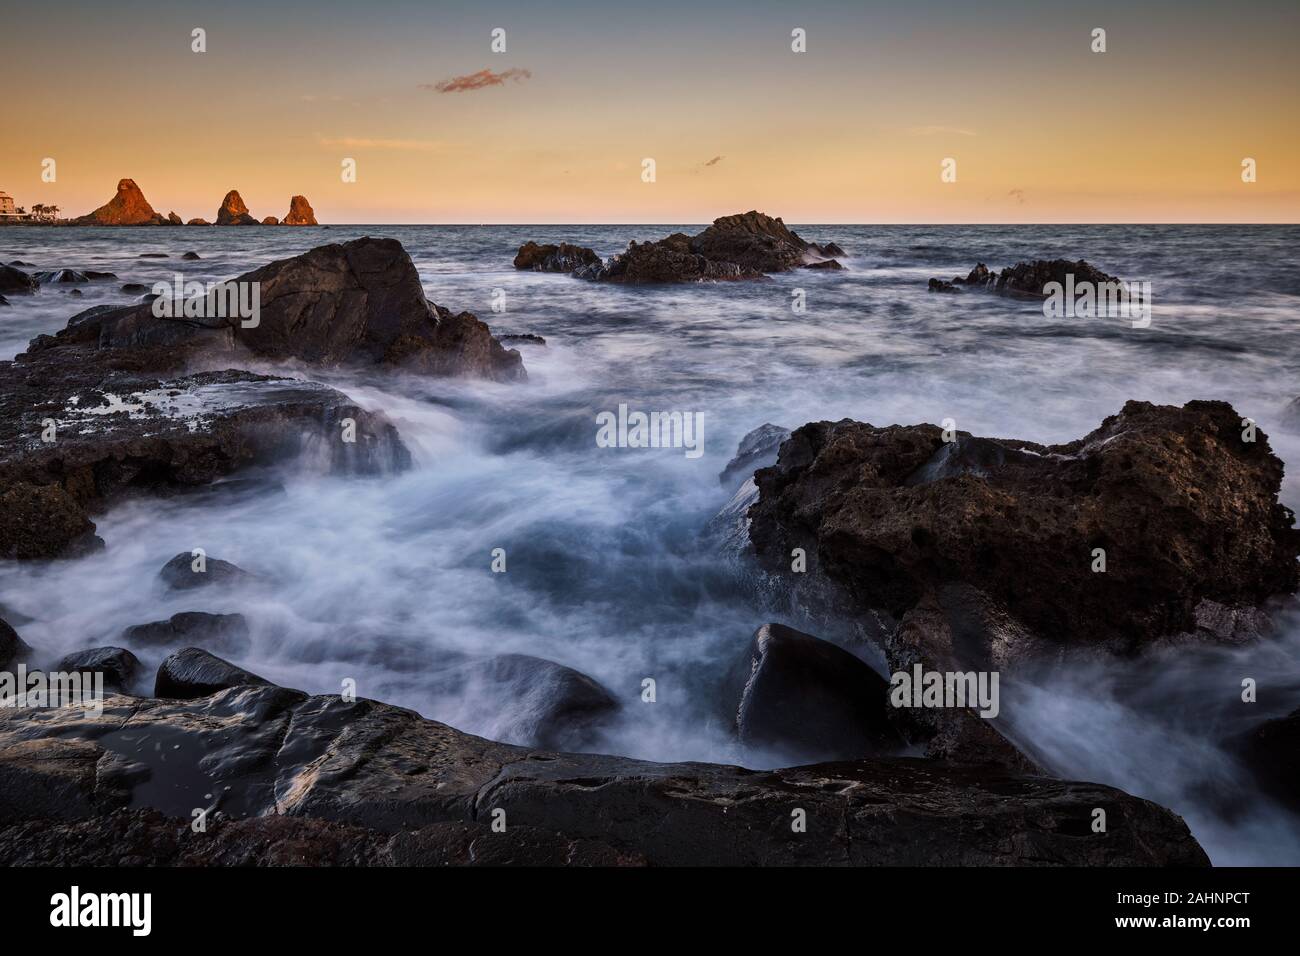 Sonnenuntergang über Aci Trezza und Ihre sea Stacks mit Wellen über die Felsen im Vordergrund brechen, Catania, Italien Stockfoto